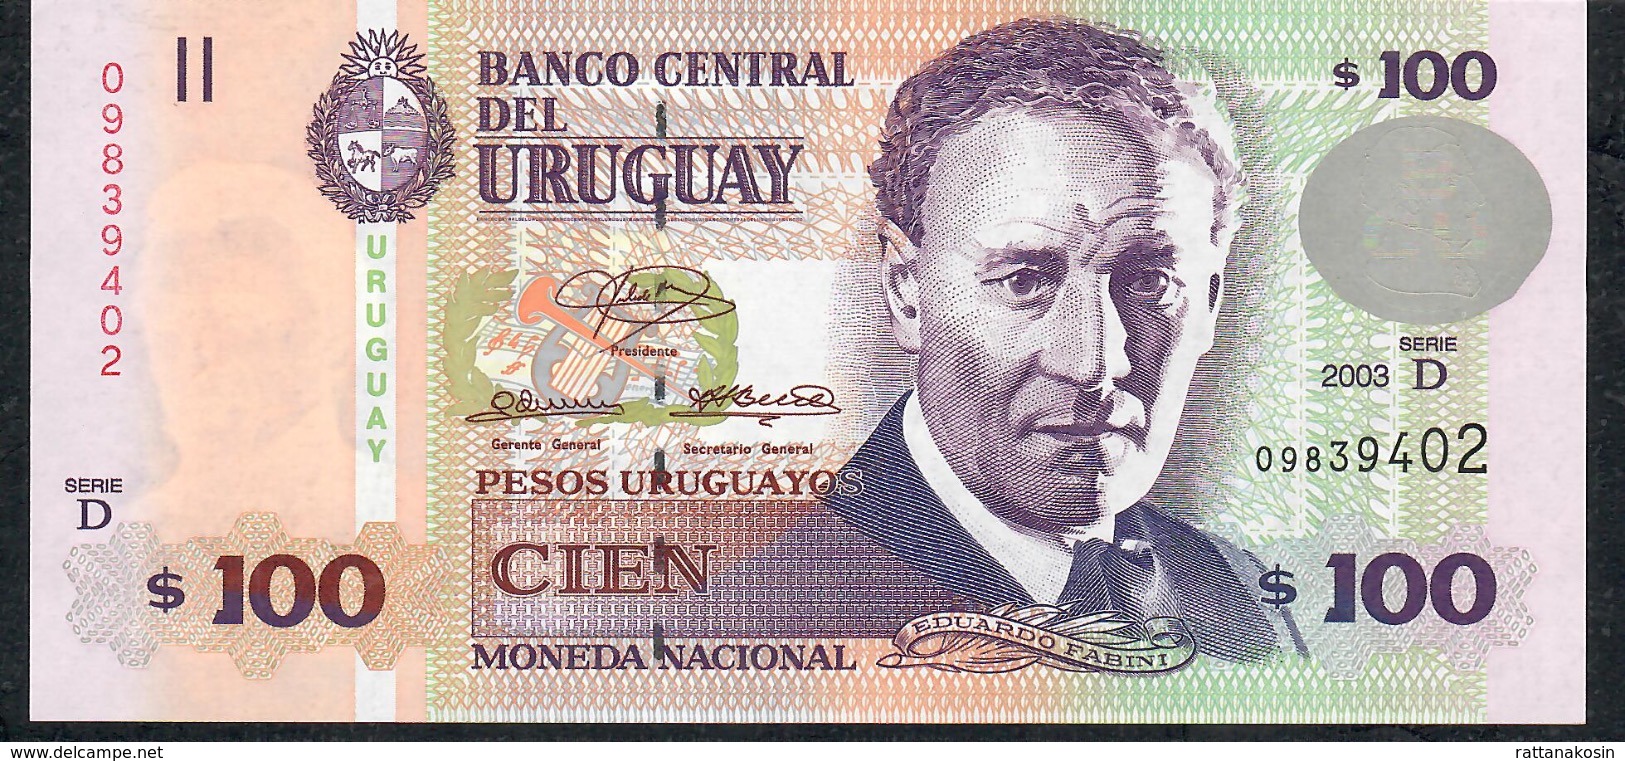 URUGUAY PP85a 100 P.U.  2003  Serie D  UNC. - Uruguay